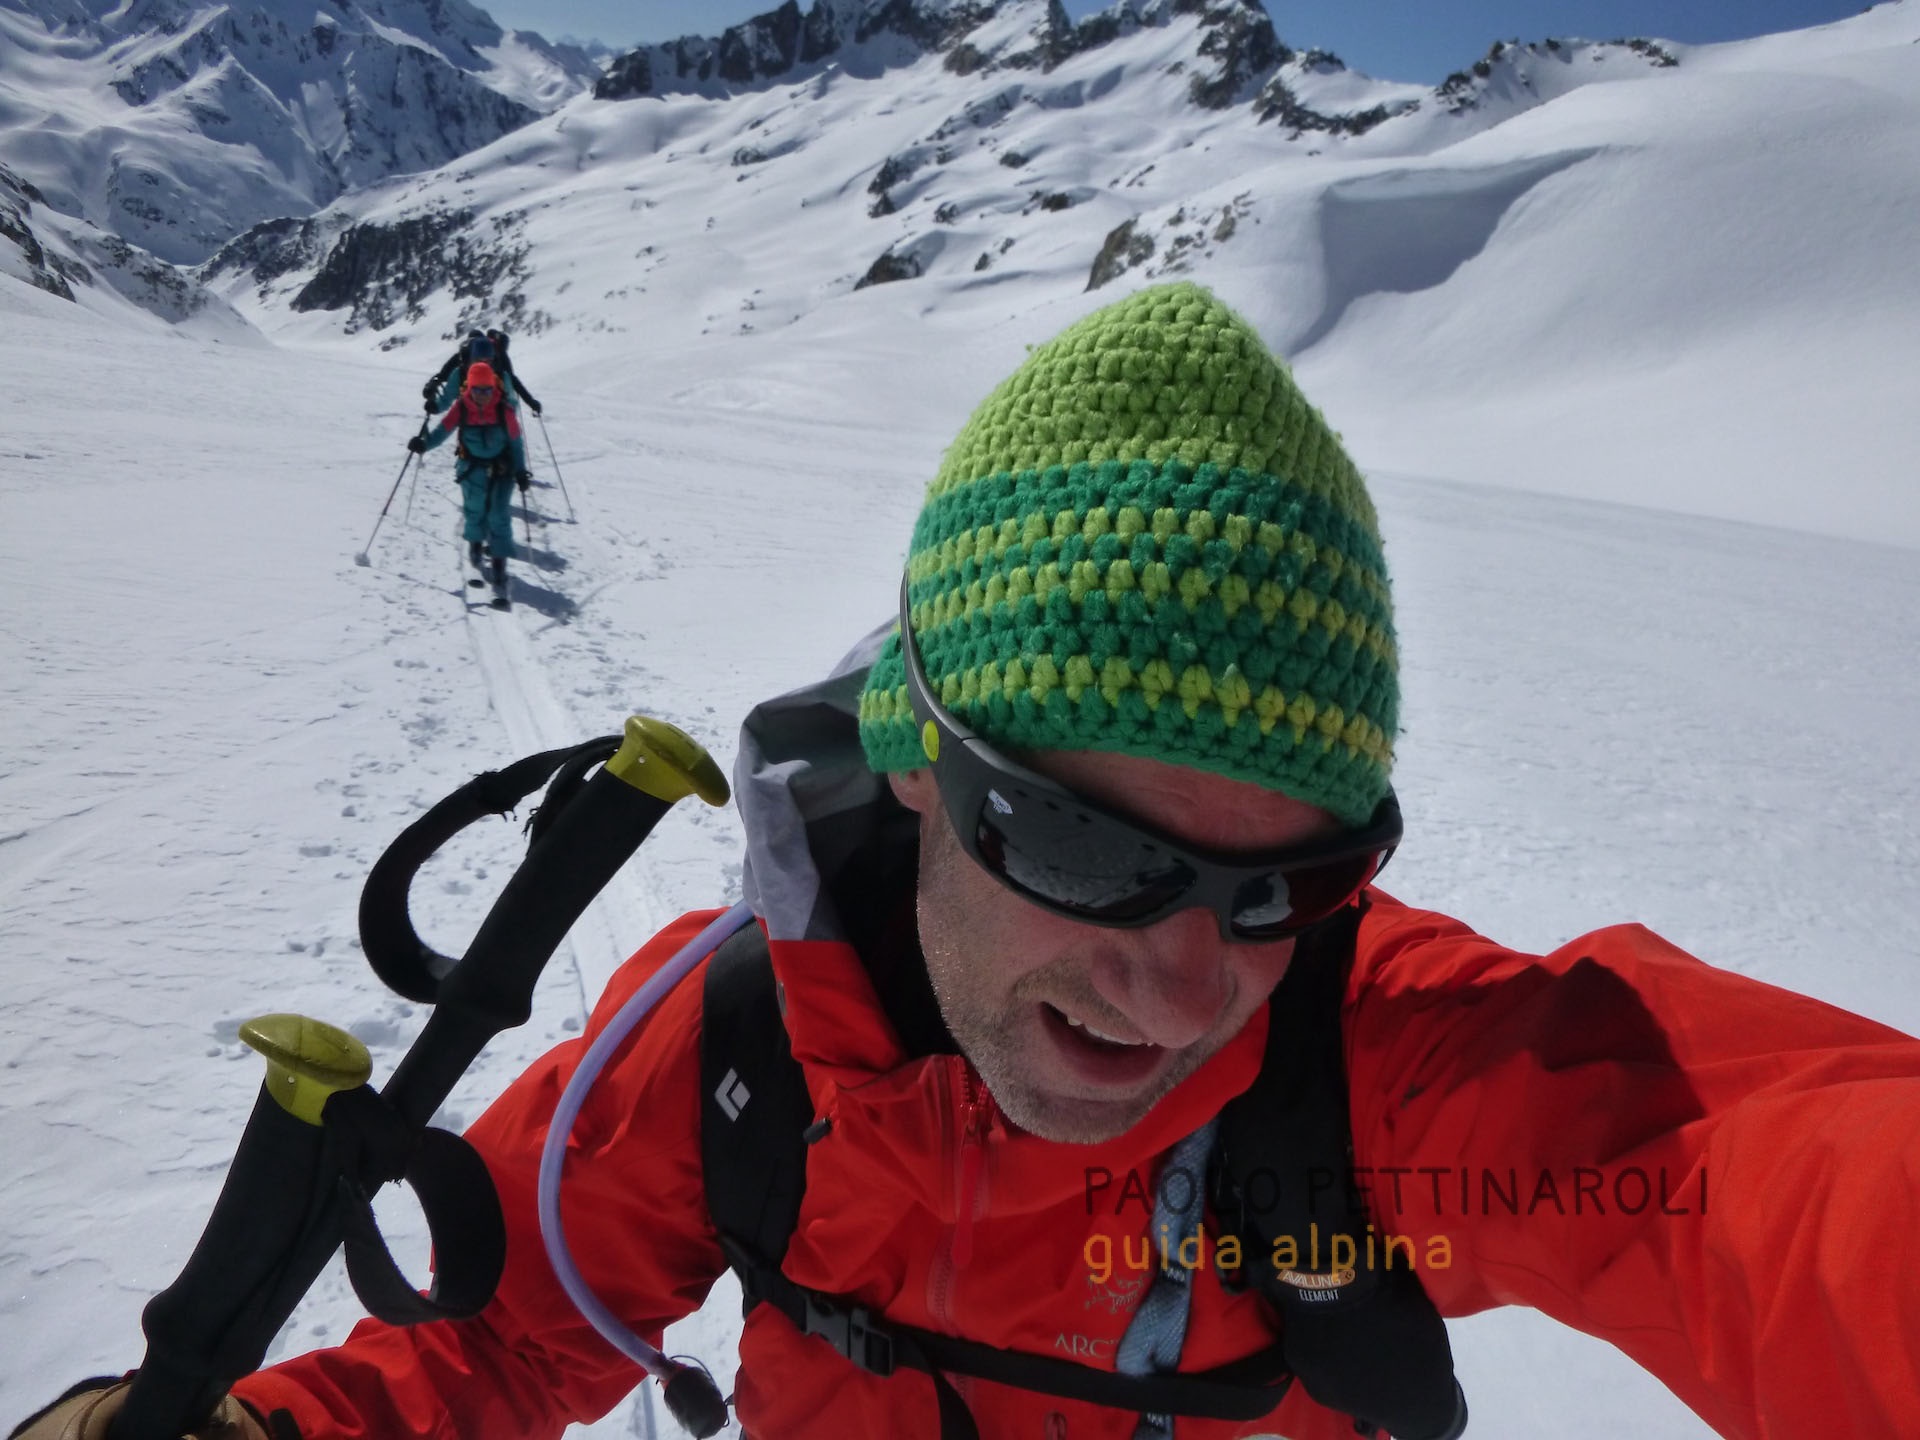 P1040098-scialpinismo_paolo pettinaroli guida alpina